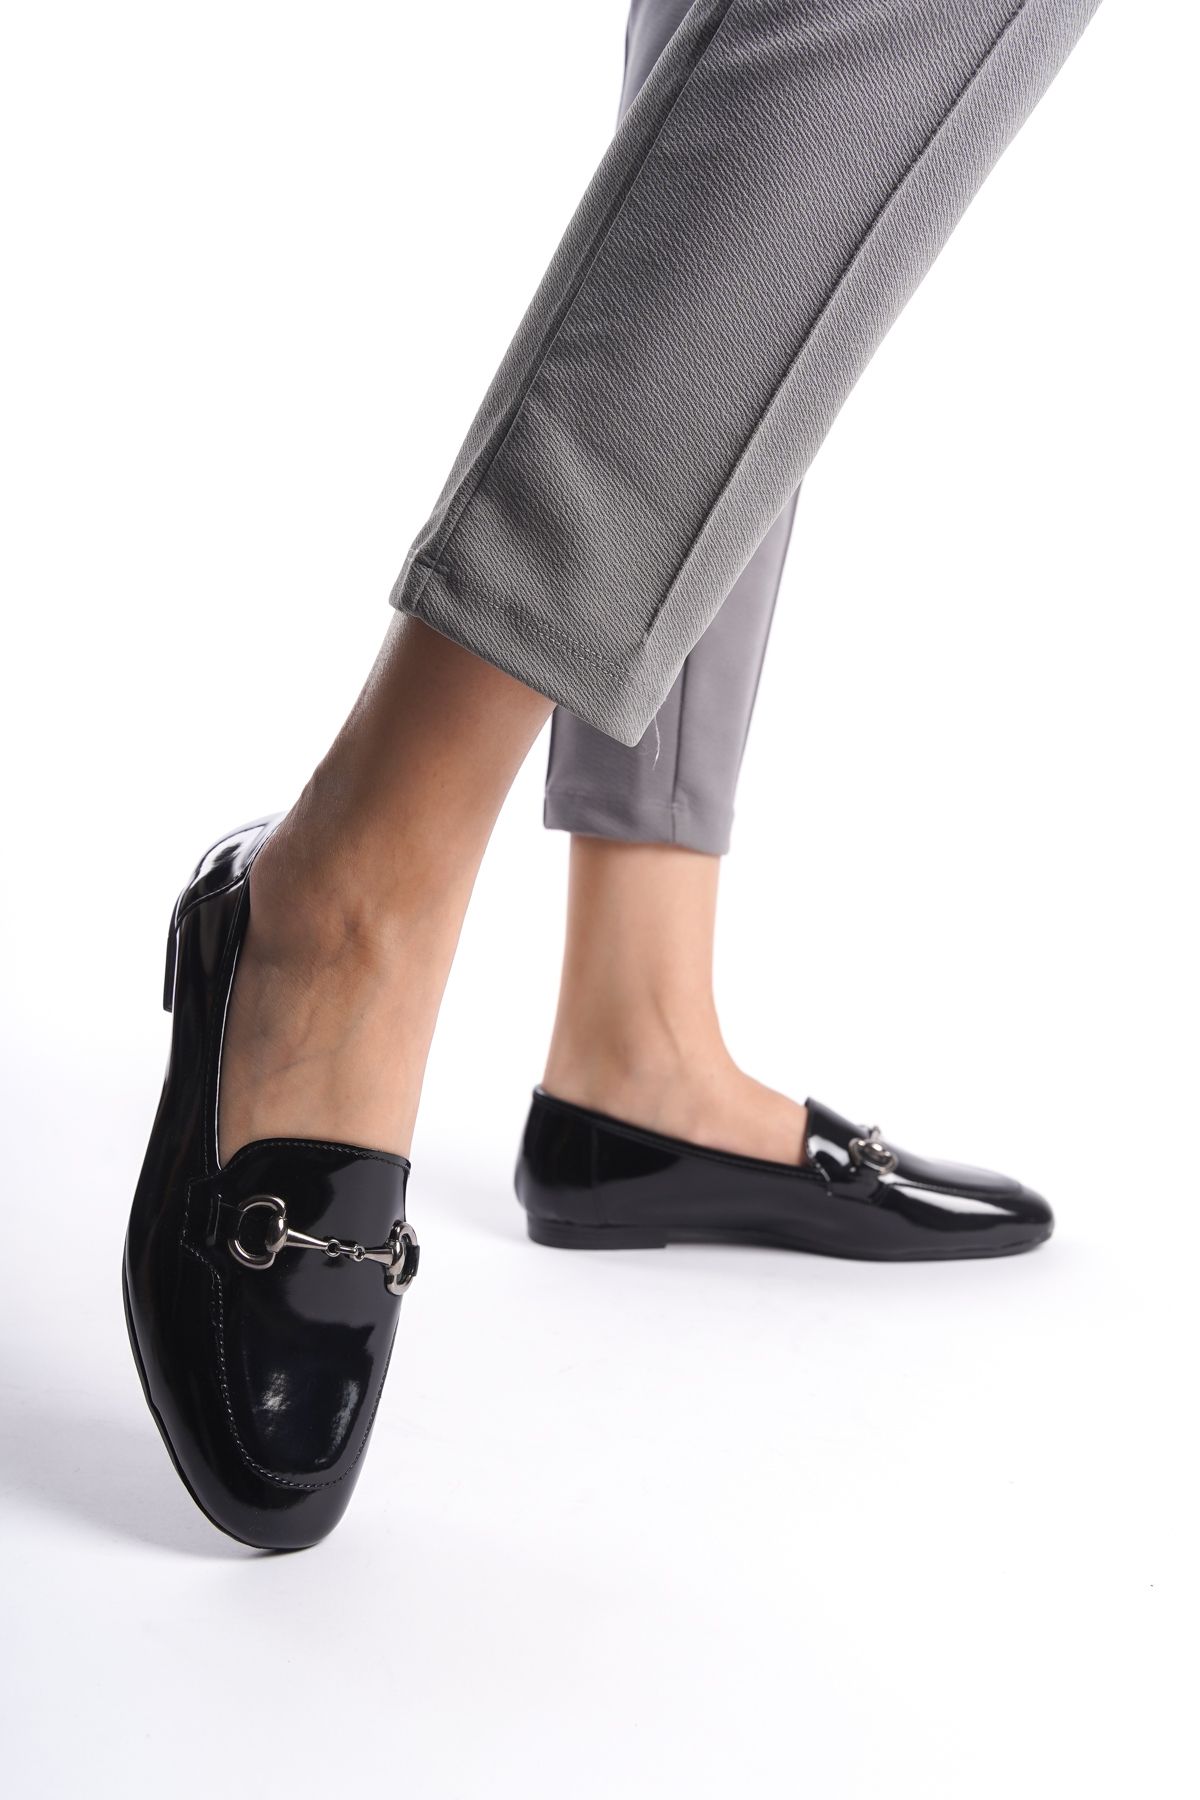 eformoda by emre yılmaz Siyah Rugan Kadın Günlük Rahat Tokalı Casual Klasik Ayakkabı Babet B22